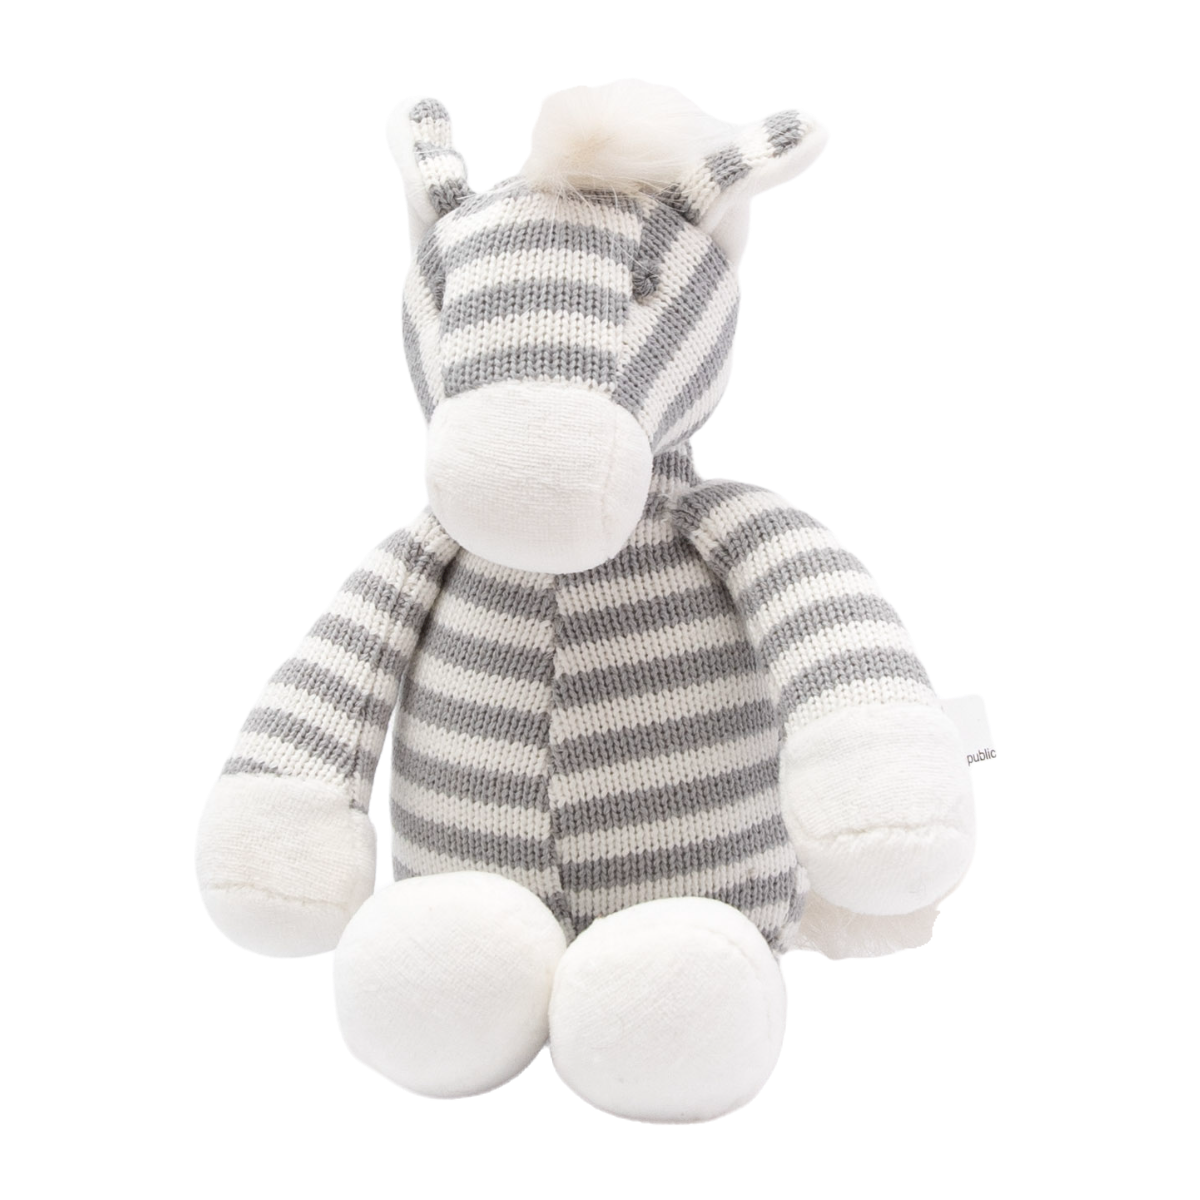 Petite Vous Ziggy the Zebra Cotton Knit Toy